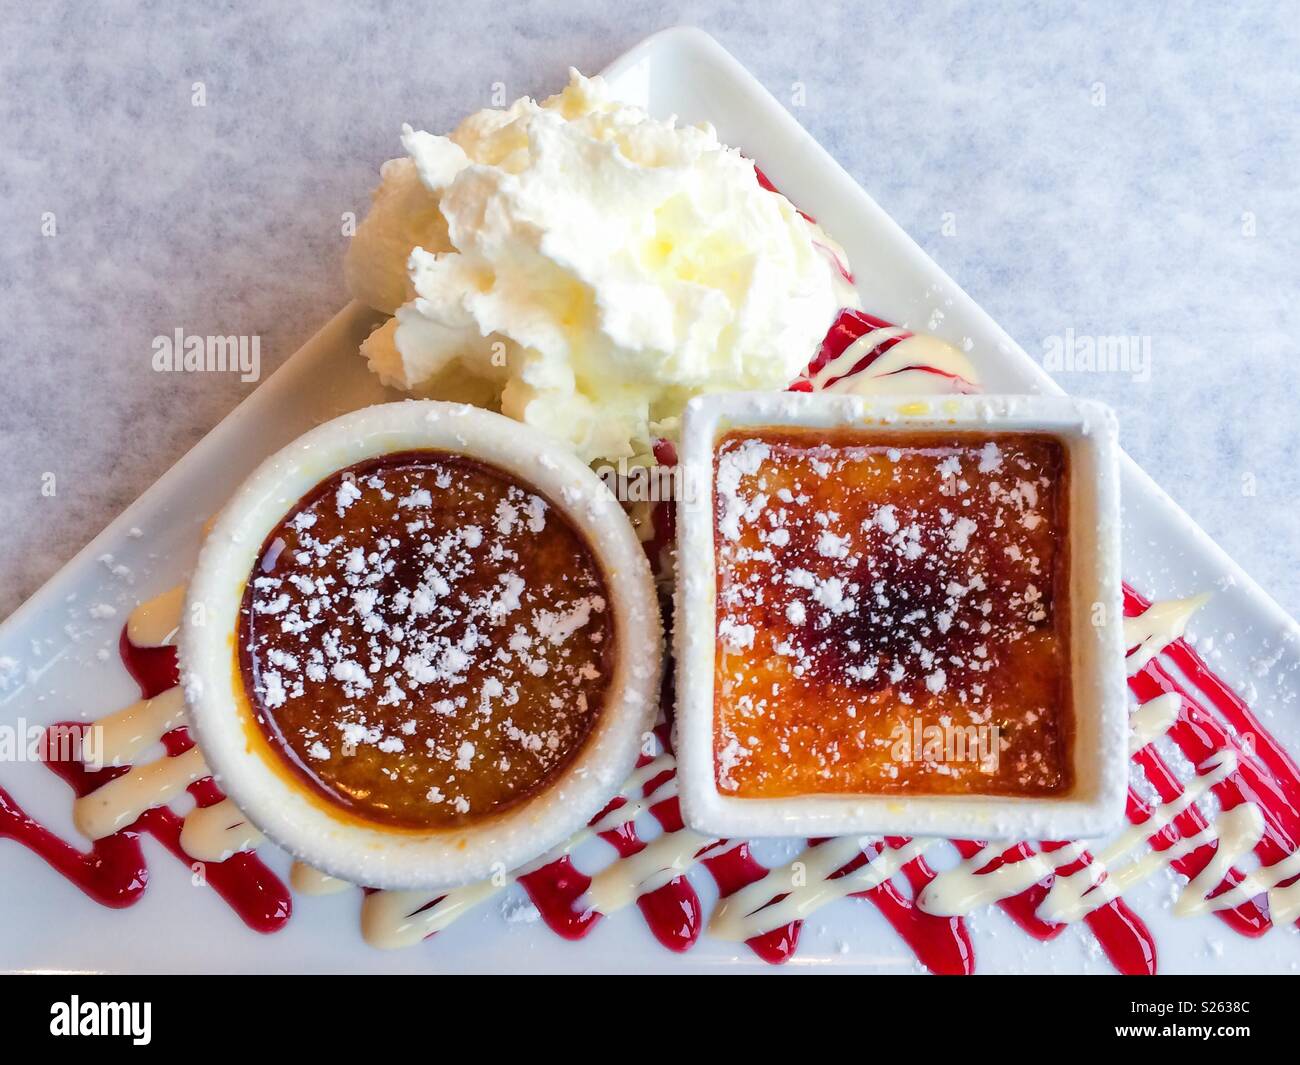 Crème brûlée dessert de deux façons, avec coulis de framboise, blanc d'un filet de chocolat et crème fouettée Banque D'Images